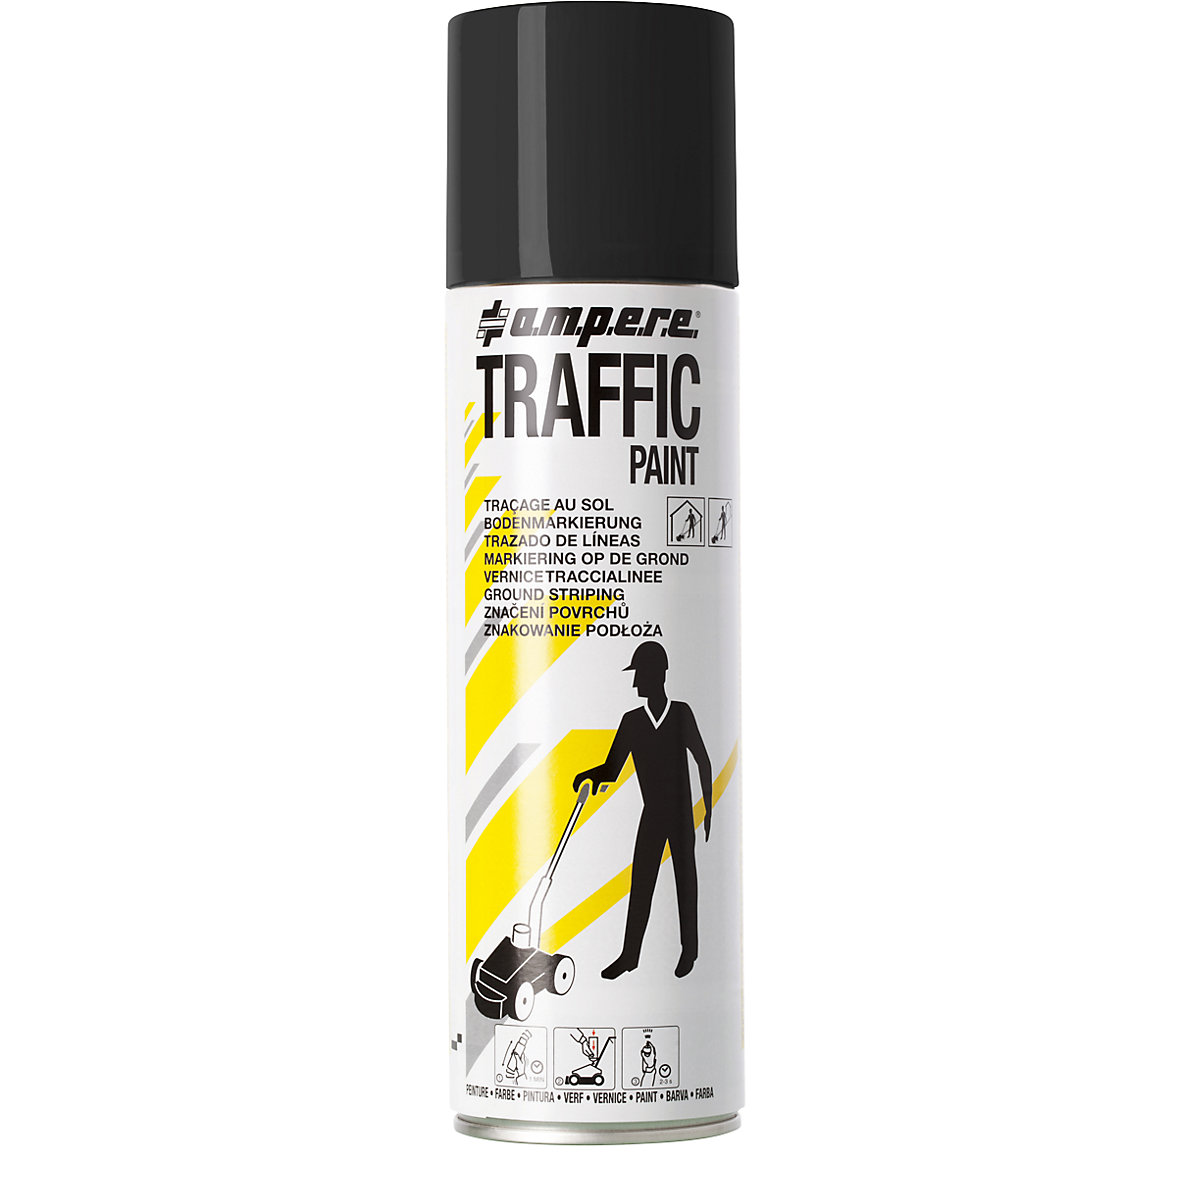 Peinture de marquage Traffic Paint® – Ampere, contenu 500 ml, lot de 12 aérosols, noir-10